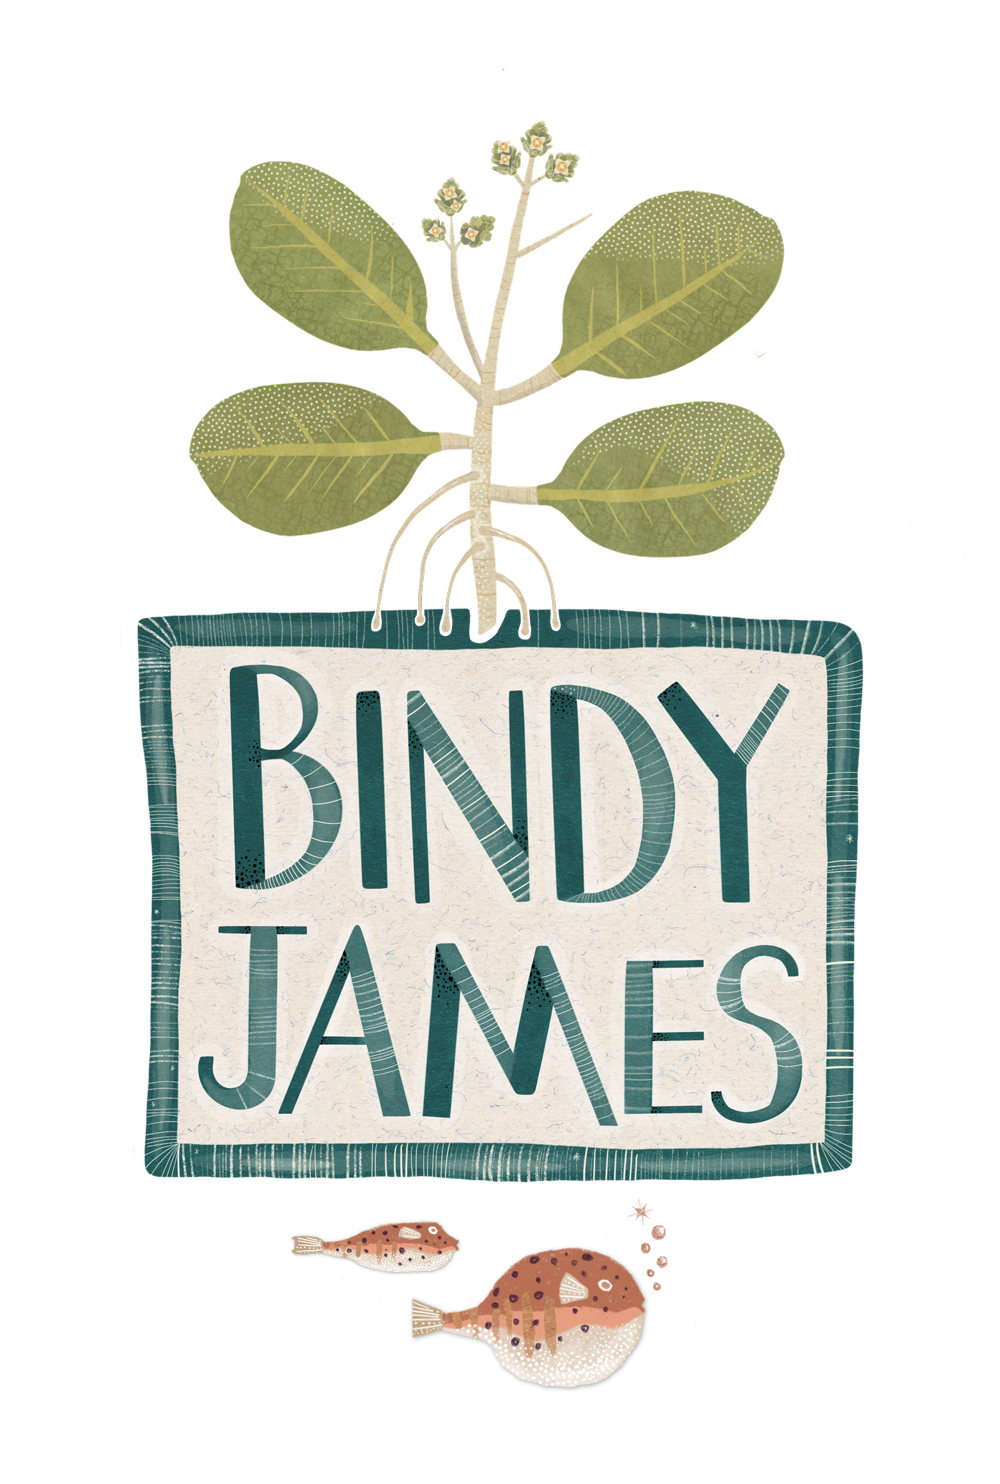 Bindy James